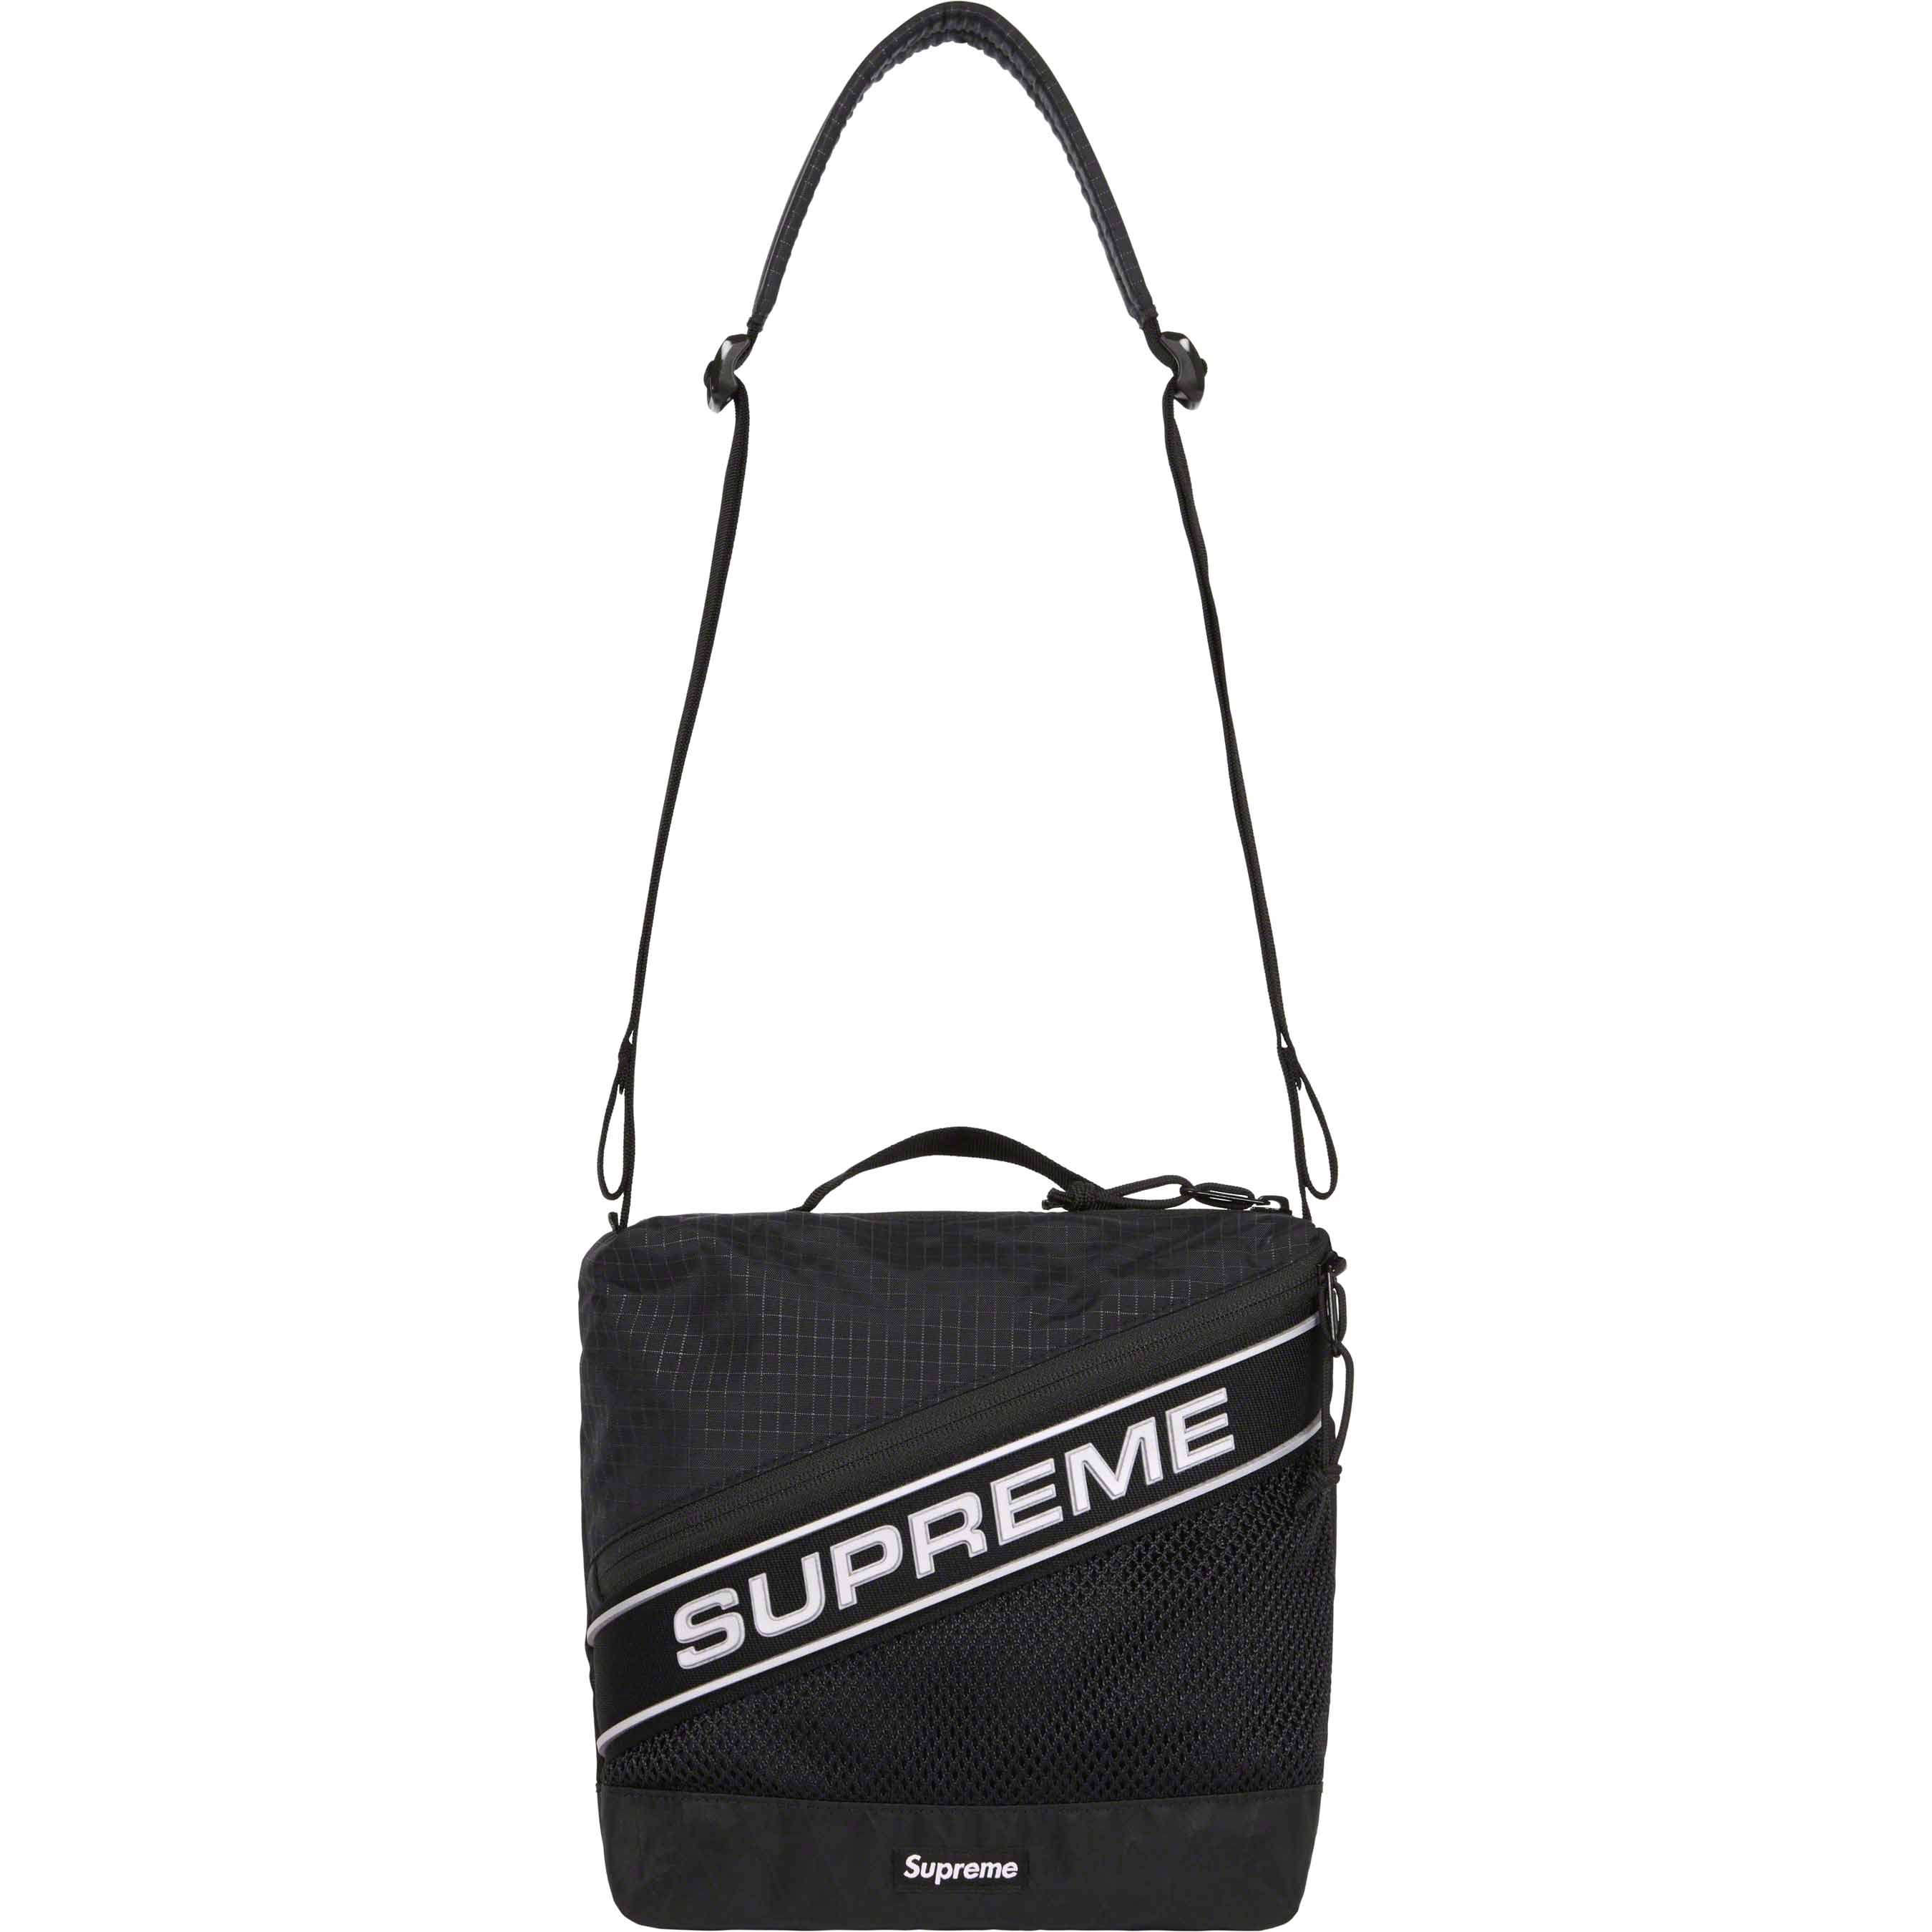 Supreme sling bag black 20fw